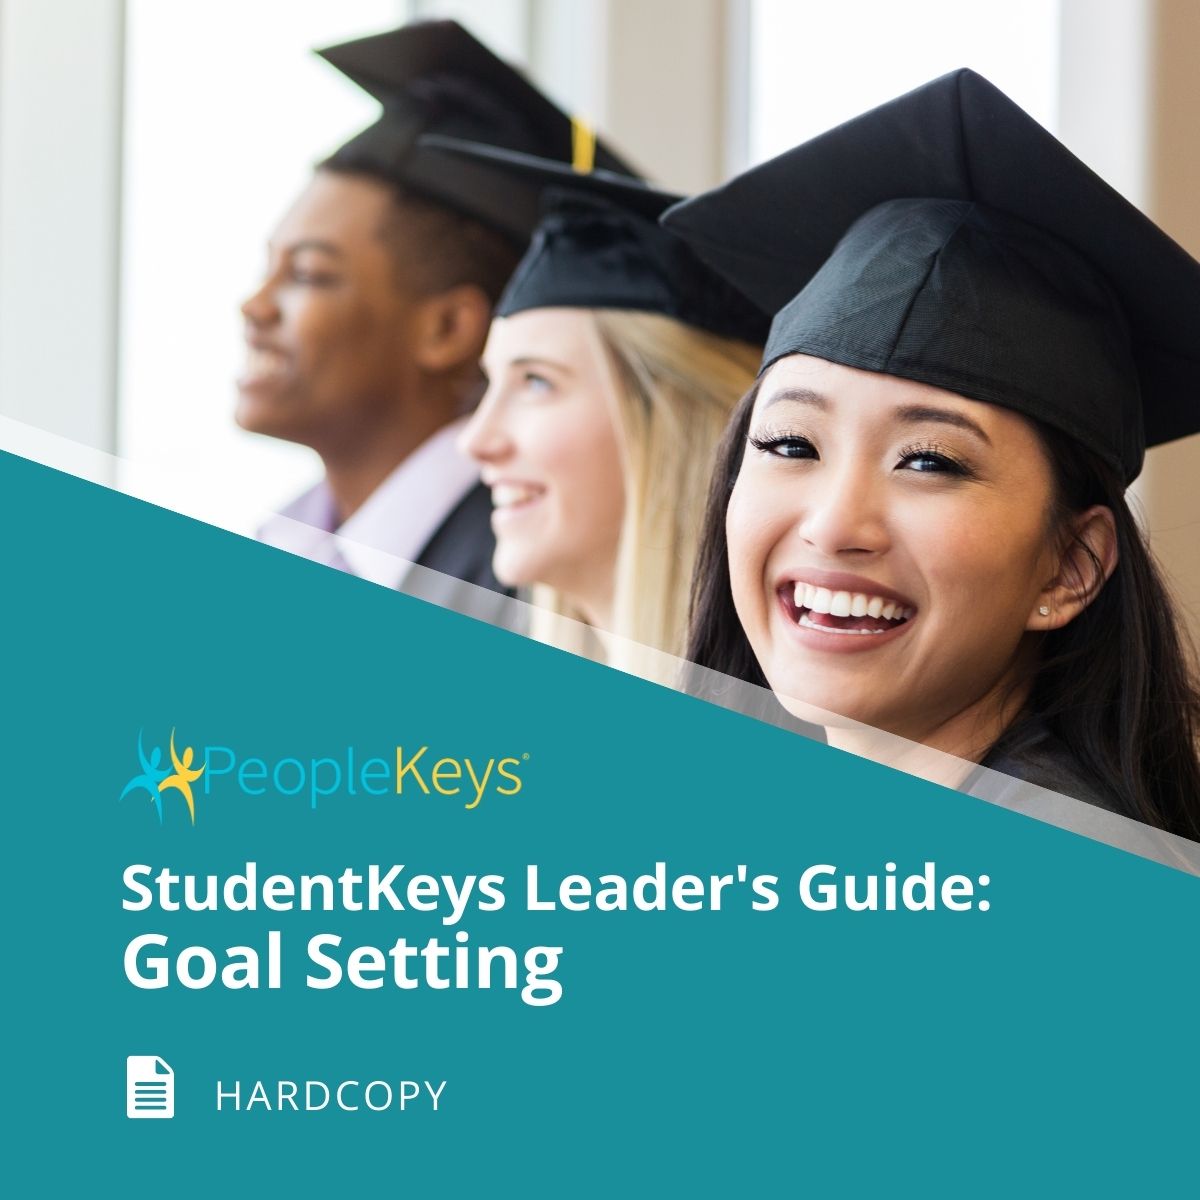 StudentKeys Leader’s Guide: Goal Setting (Hardcopy)